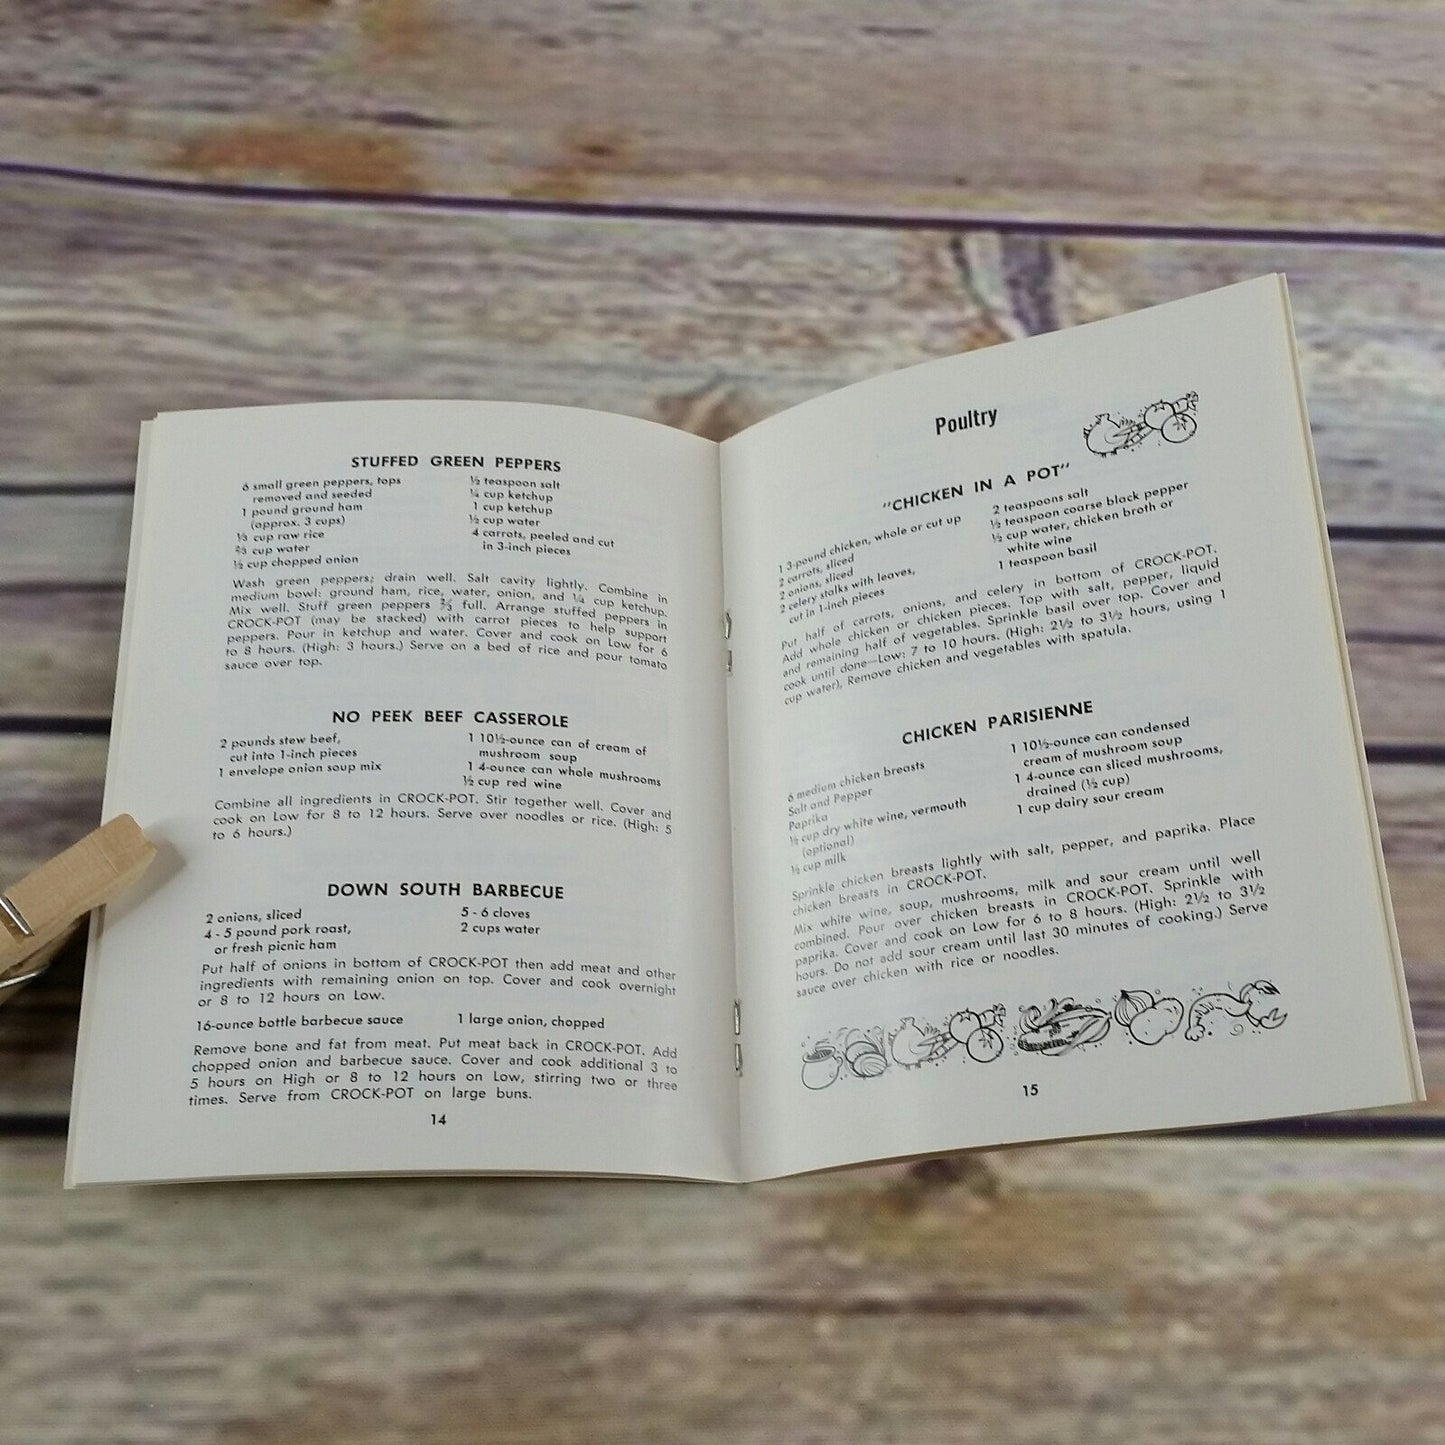 Vintage Rival Crock Pot Cookbook Owner's Manual Recipes Slow Cooker 1970s Paperback Booklet 427-399